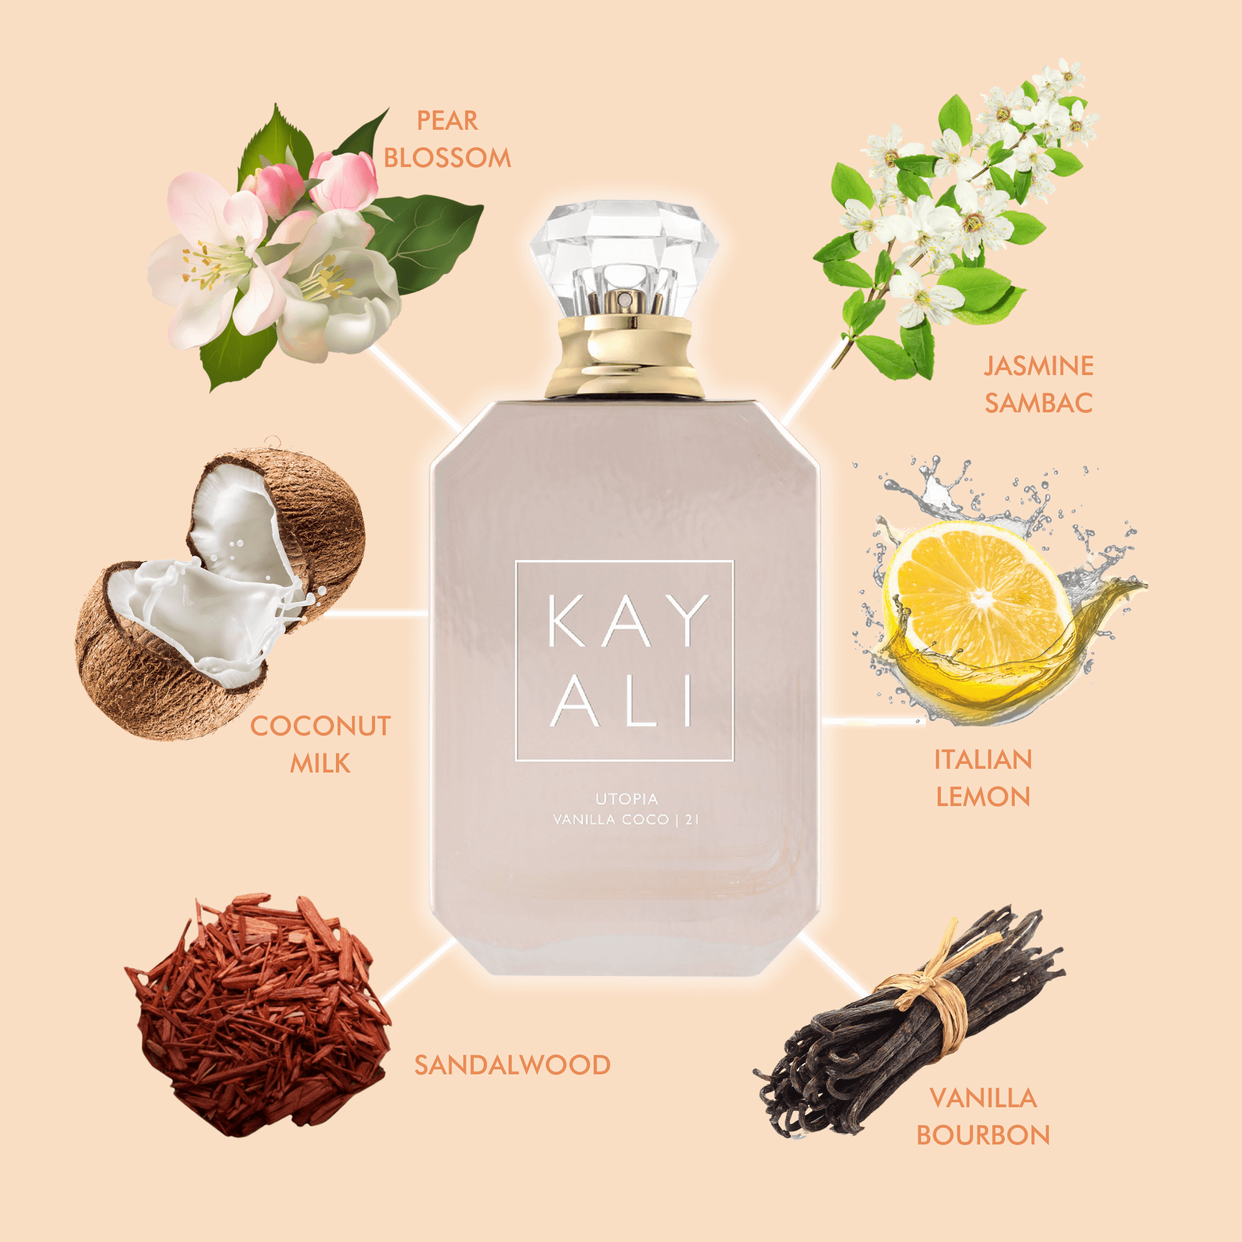 Buy Kayali Utopia Vanilla Coco 21 Eau De Parfum - NNNOW.com